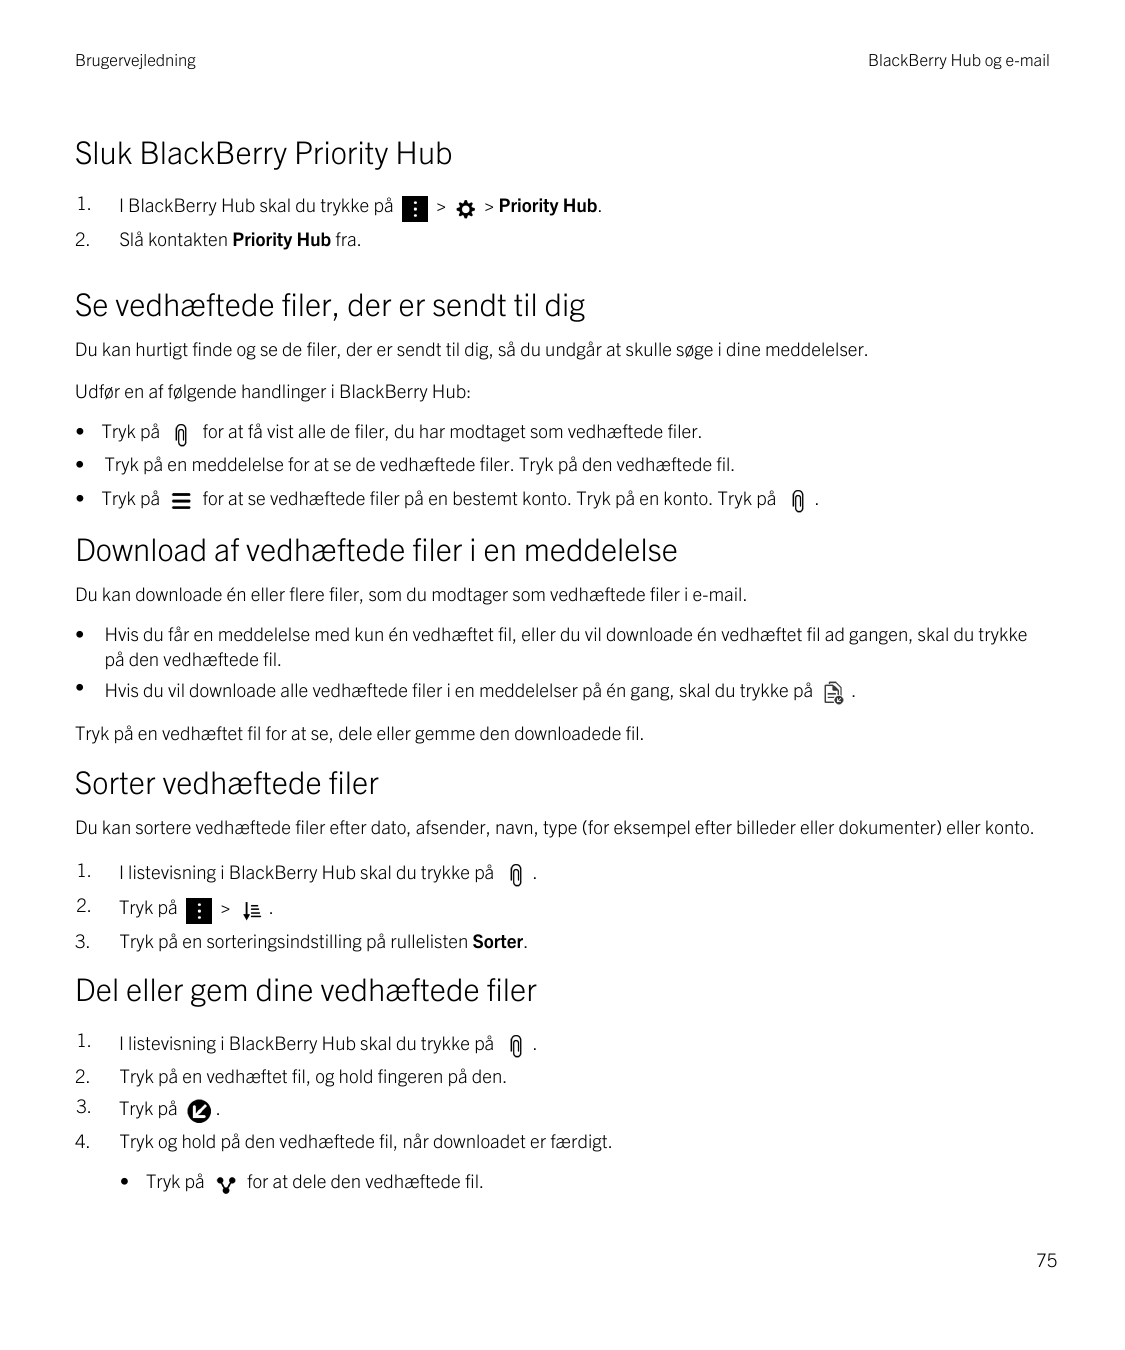 BrugervejledningBlackBerry Hub og e-mailSluk BlackBerry Priority Hub1.I BlackBerry Hub skal du trykke på2.Slå kontakten Priority